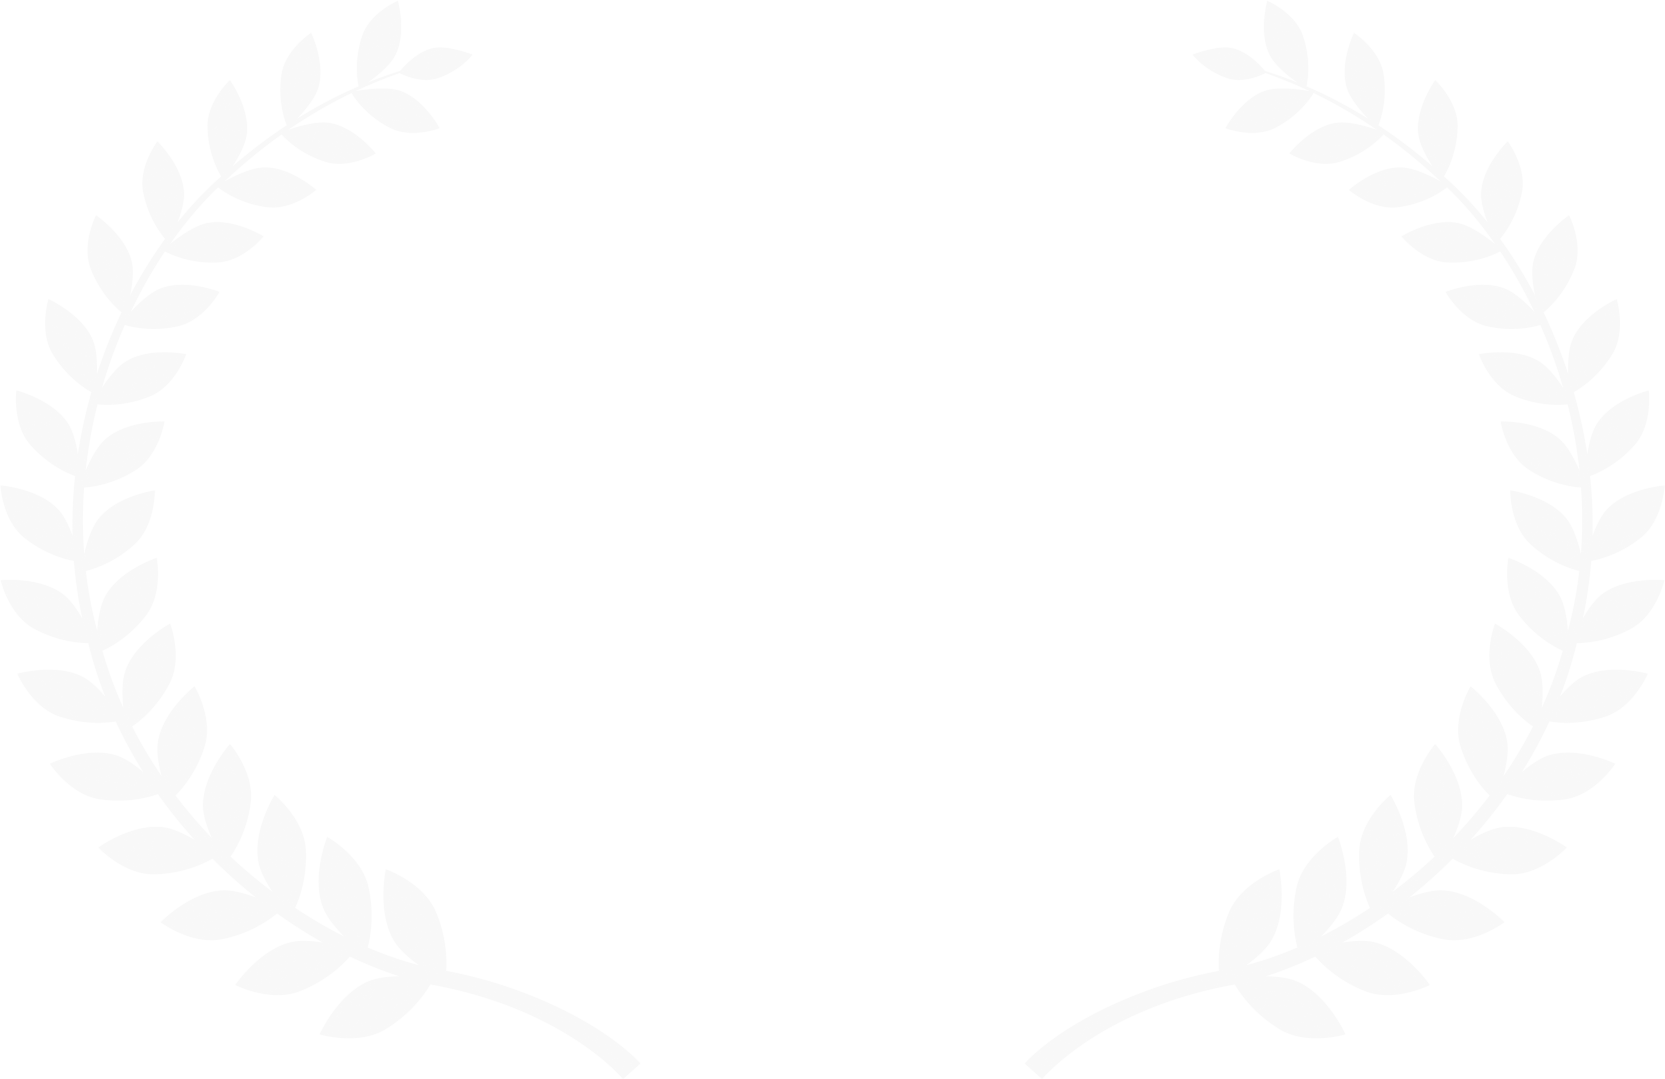 Philp K. Dick Film Festival Winner 2021